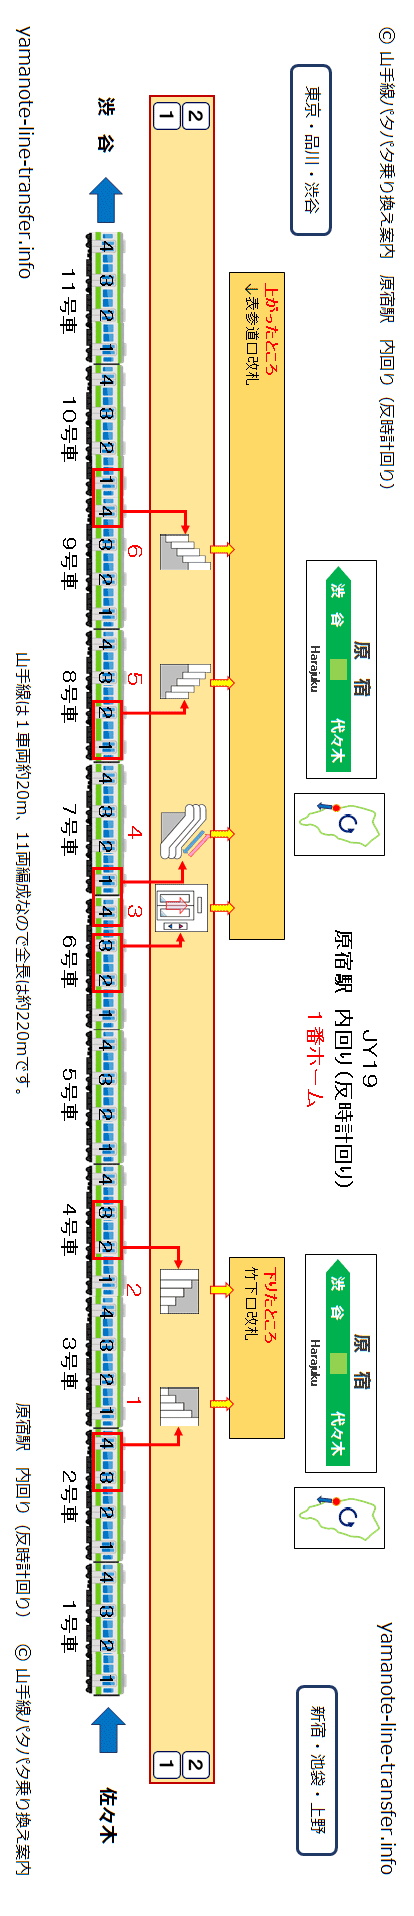 階段 竹下口改札へ1分で行くには 原宿駅 山手線内回り 山手線パタパタ乗り換え案内